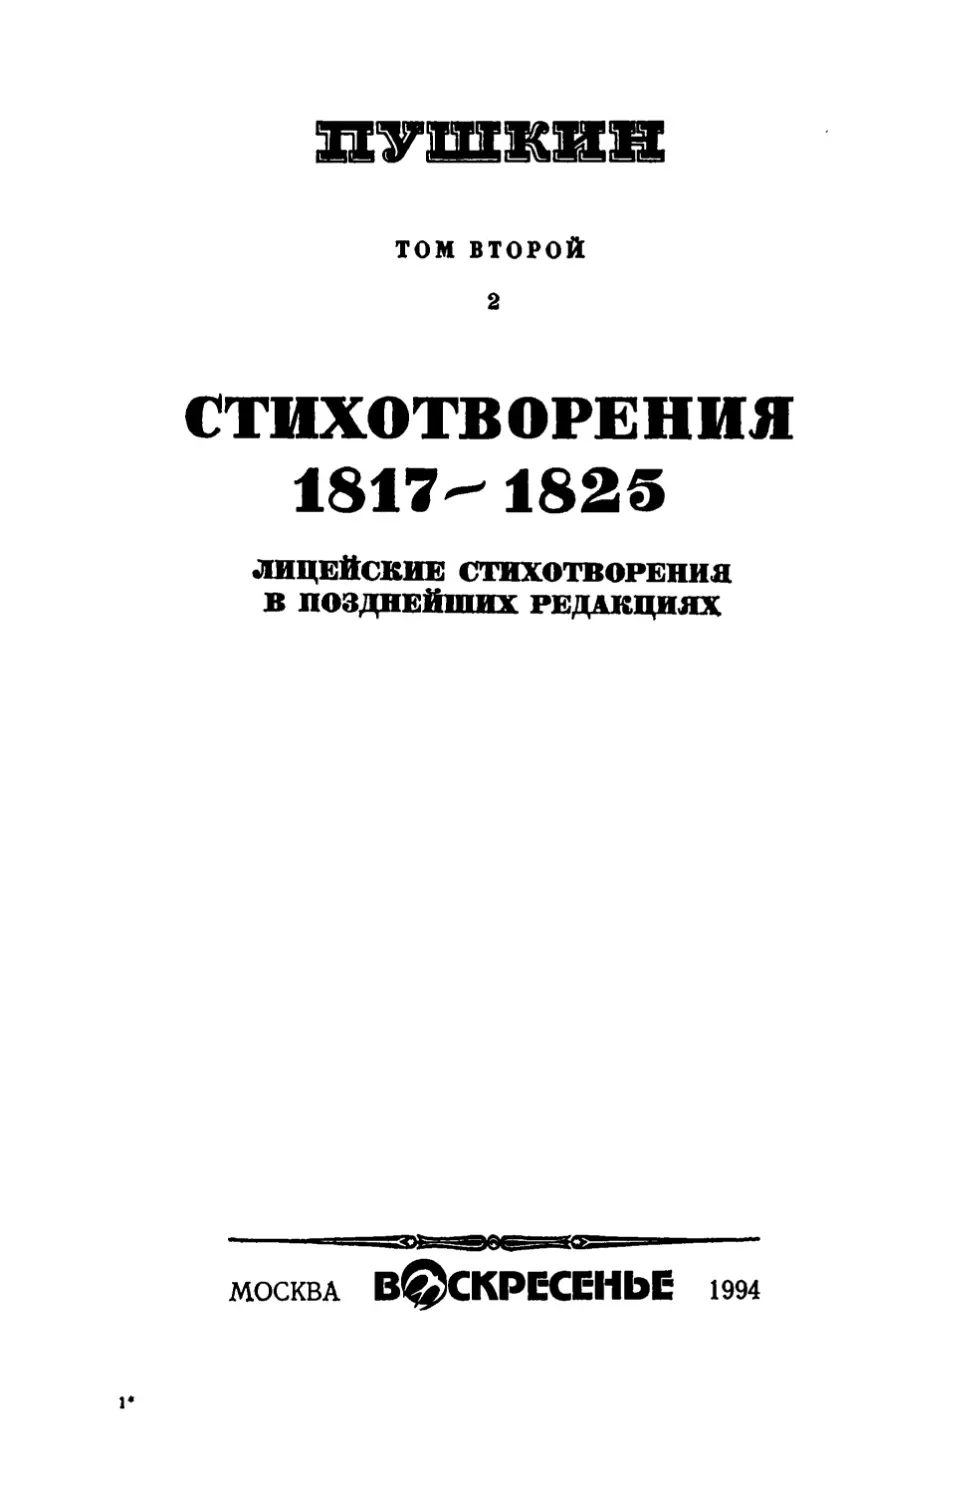 ТОМ II, книга 2
СТИХОТВОРЕНИЯ 1817 - 1825